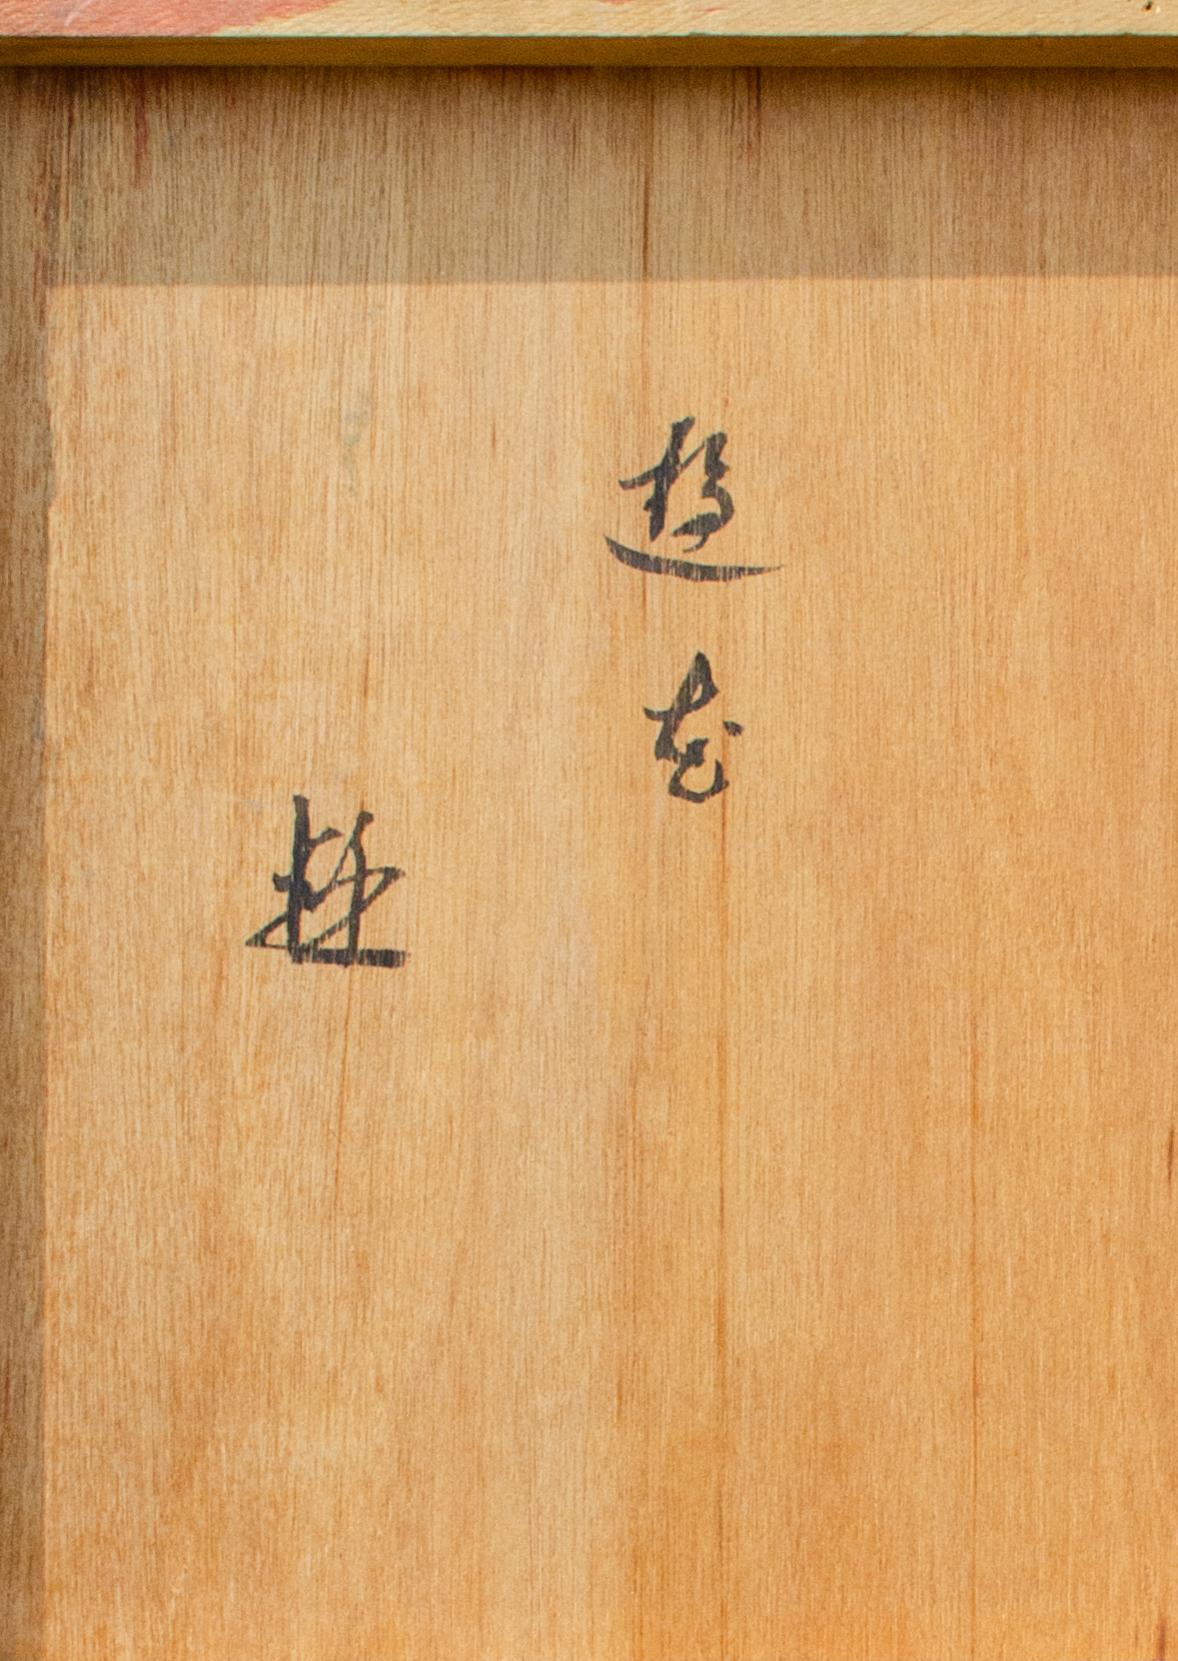 Ohne Titel, ca. 21. Jahrhundert
Gemischte Medien auf Holz
28 1/2 x 20 1/4 x 1 in.
Verso auf Japanisch beschriftet